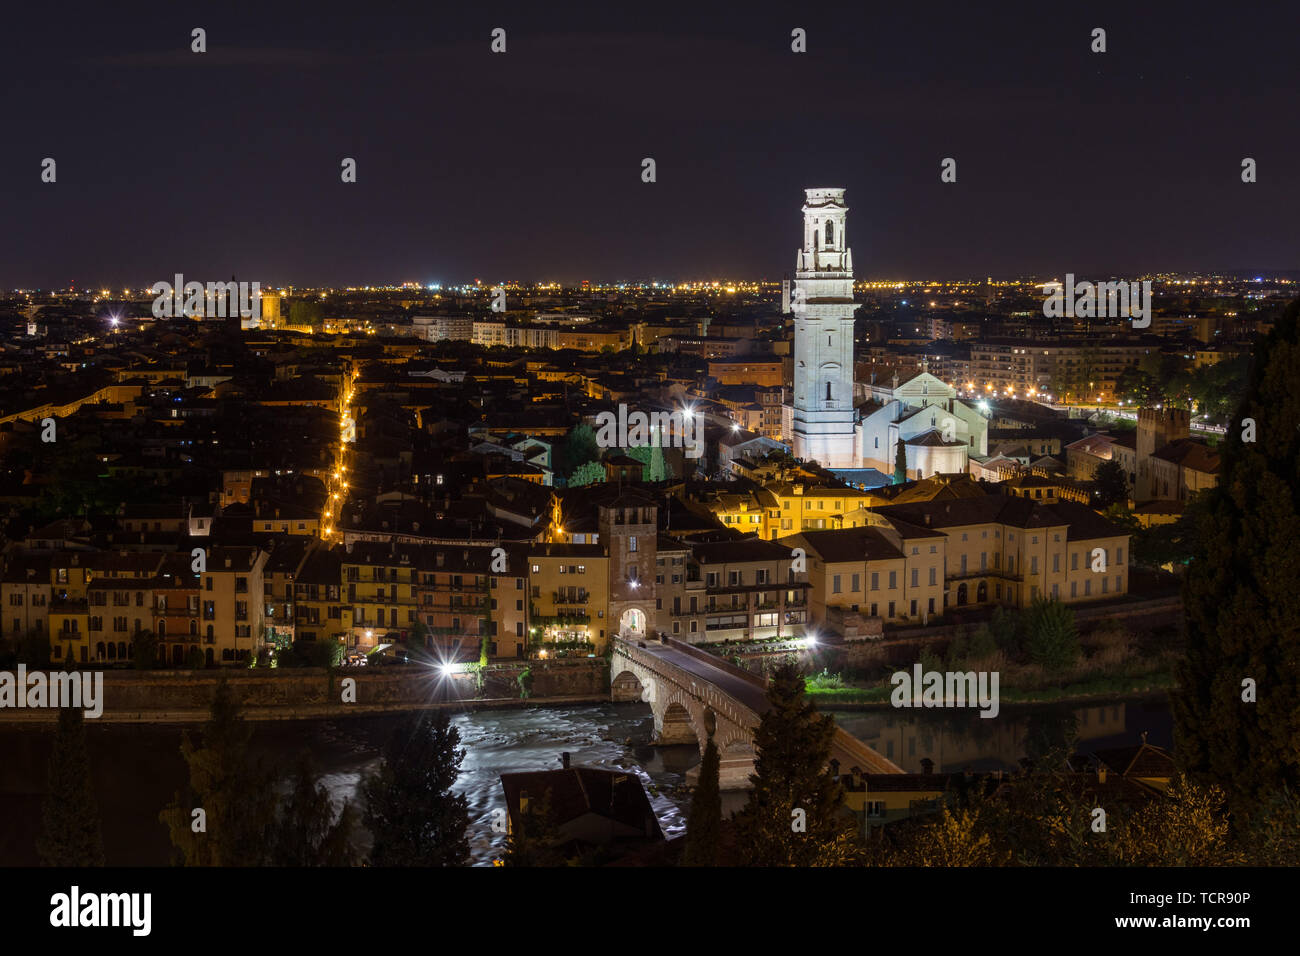 Panoramic night view of Verona taken from Castel San Pietro, Italy Stock Photo